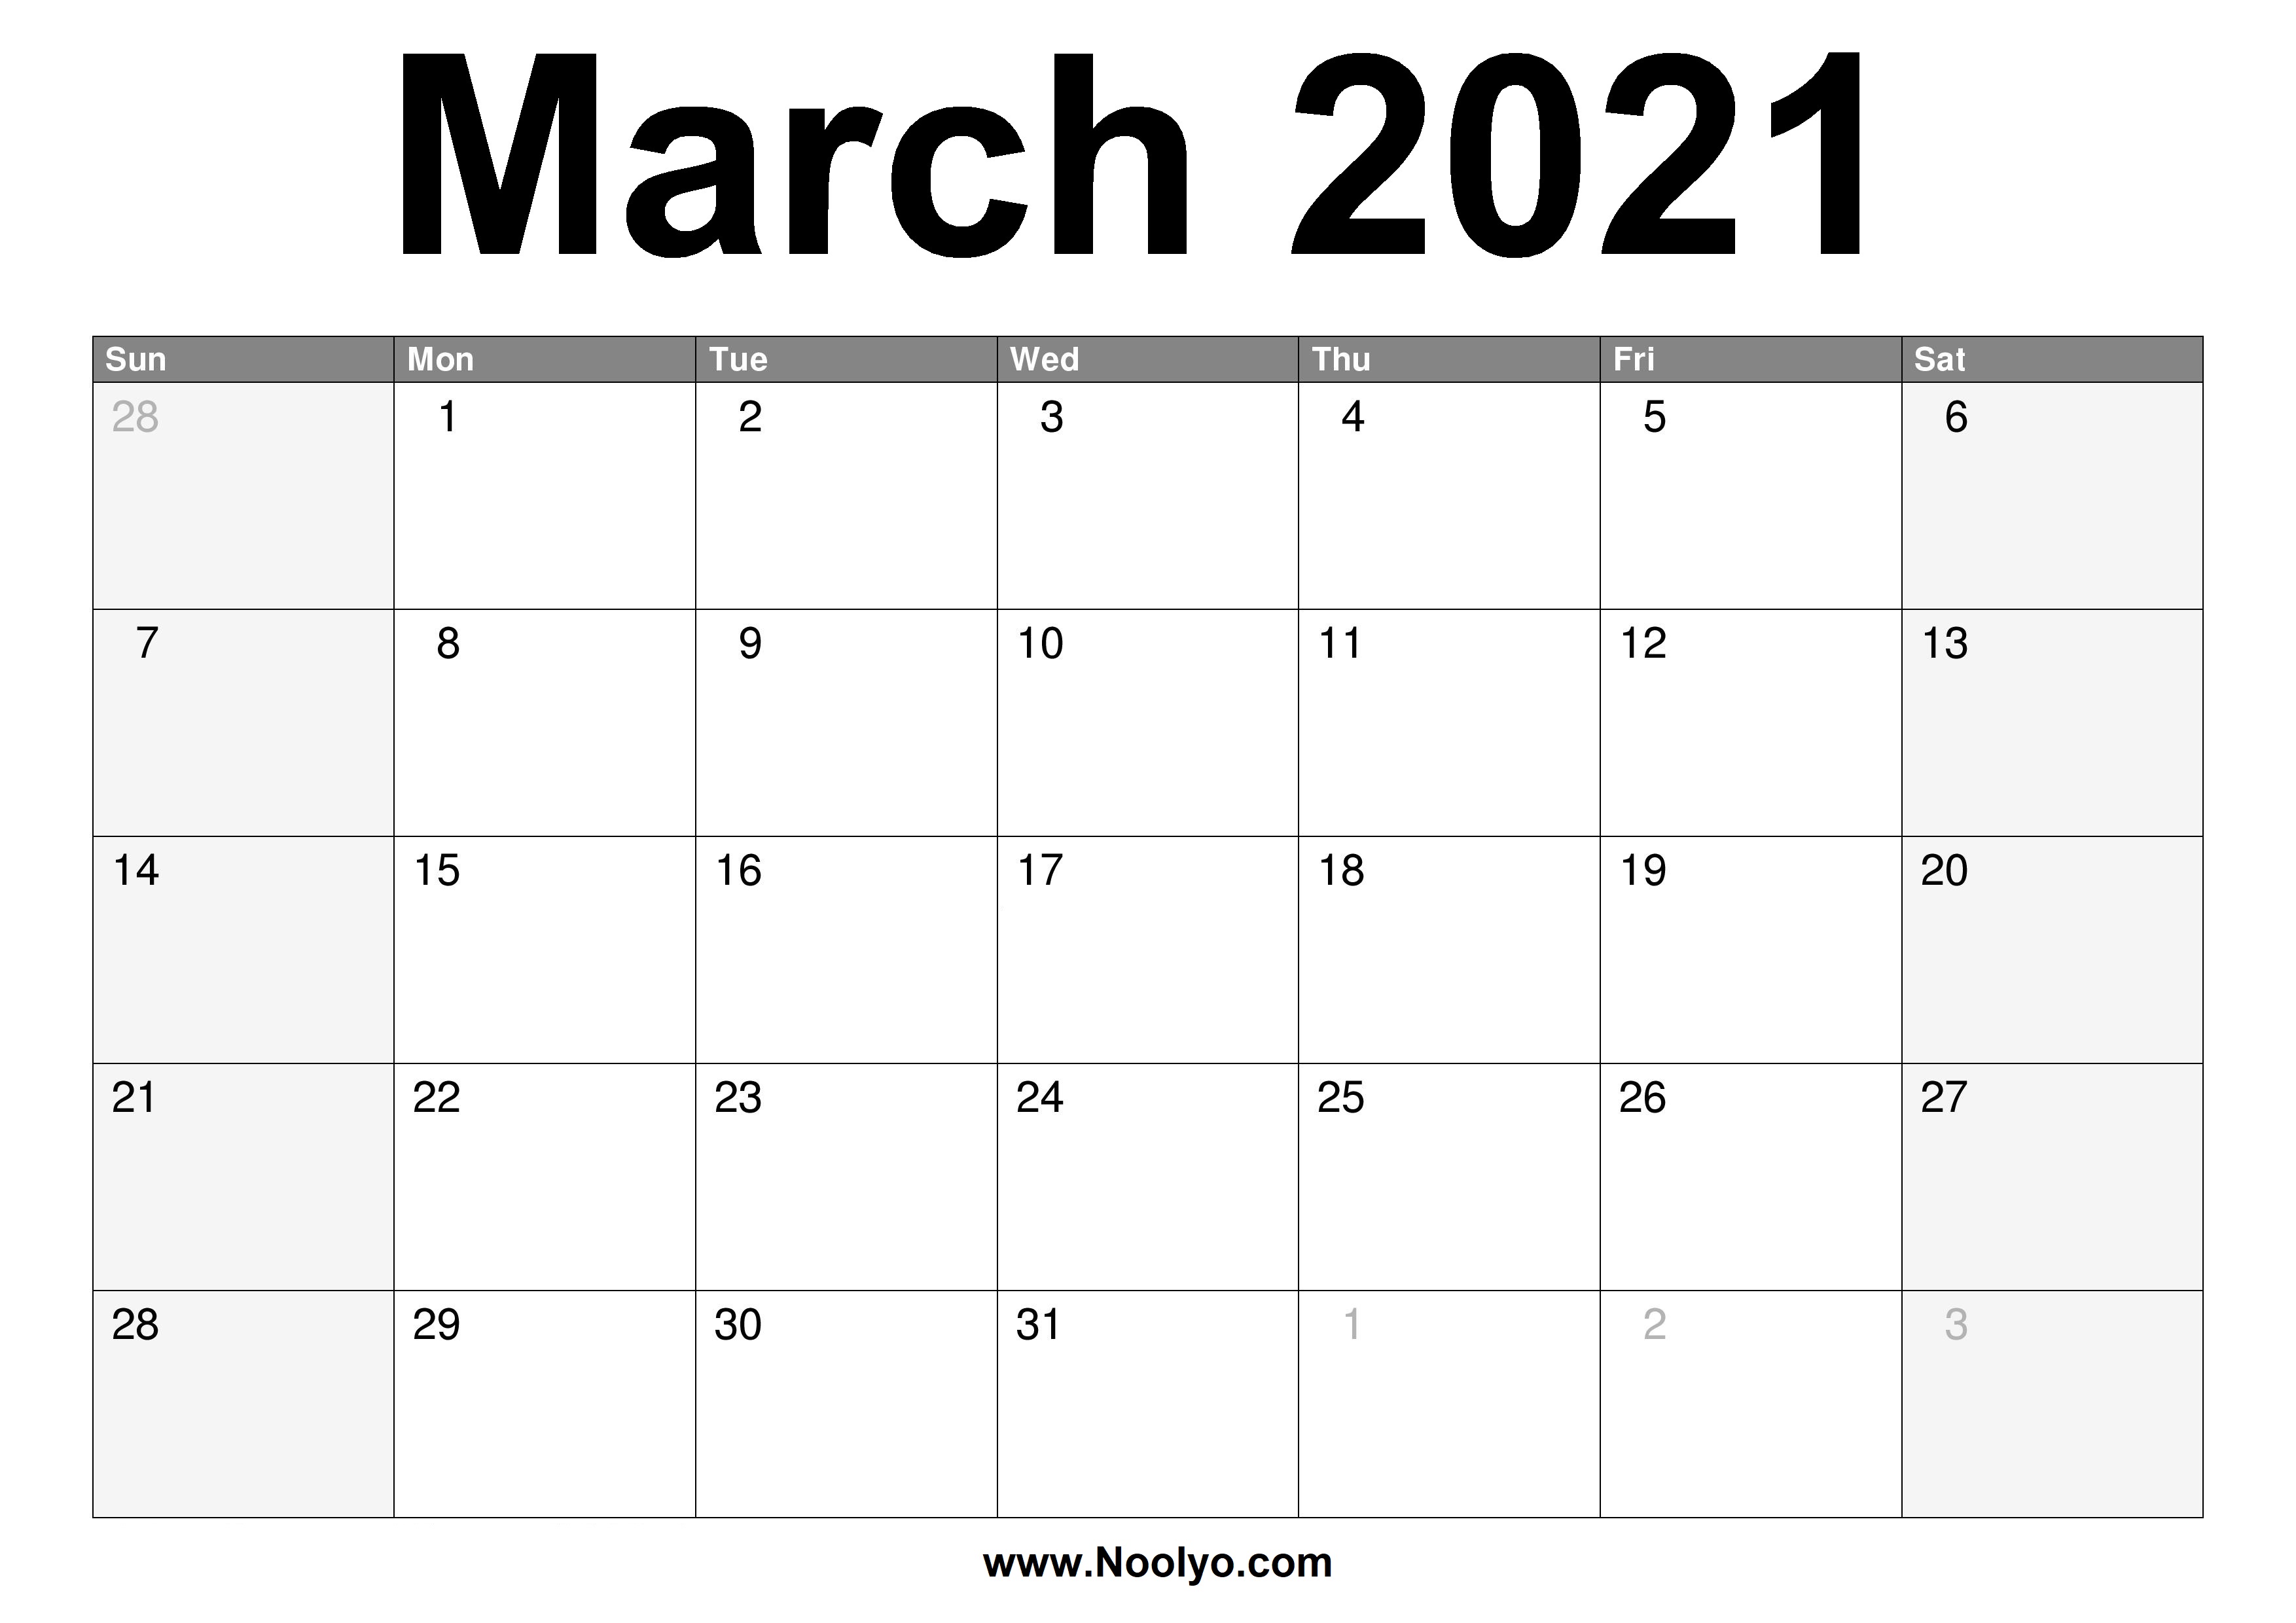 march 2021 desktop calendar March 2021 Calendar Printable Free Download Noolyo Com march 2021 desktop calendar